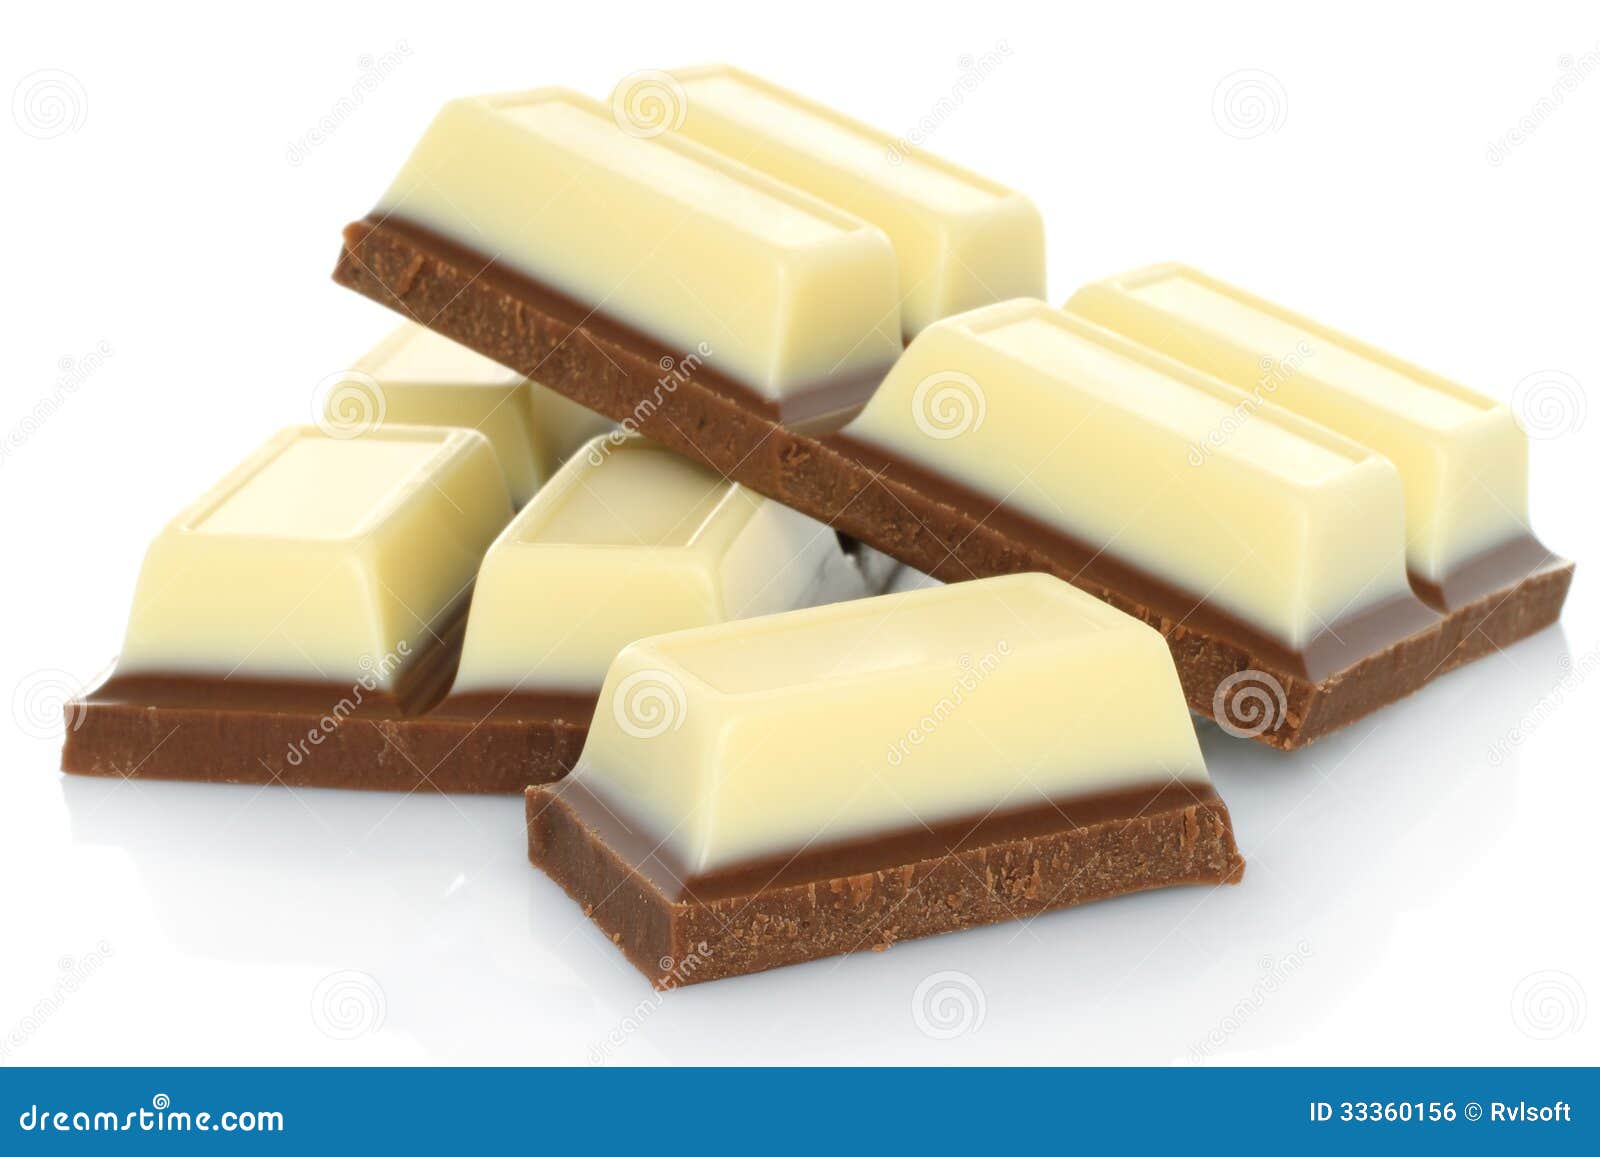 http://thumbs.dreamstime.com/z/barra-de-chocolate-blanco-y-negro-quebrada-33360156.jpg